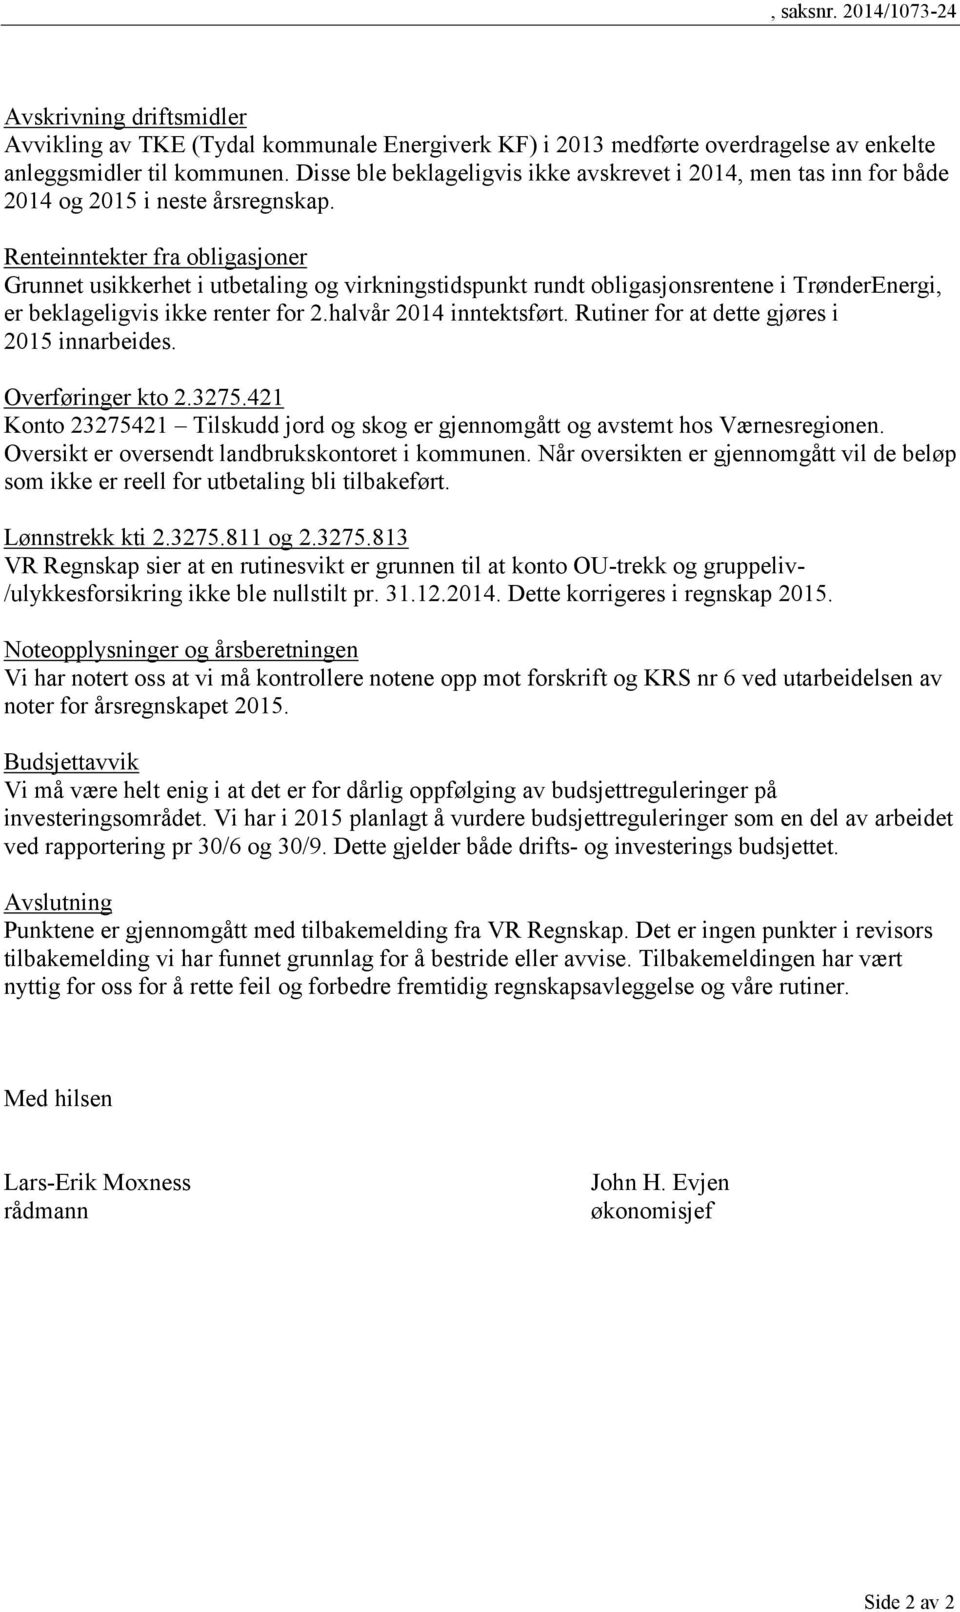 Renteinntekter fra obligasjoner Grunnet usikkerhet i utbetaling og virkningstidspunkt rundt obligasjonsrentene i TrønderEnergi, er beklageligvis ikke renter for 2.halvår 2014 inntektsført.